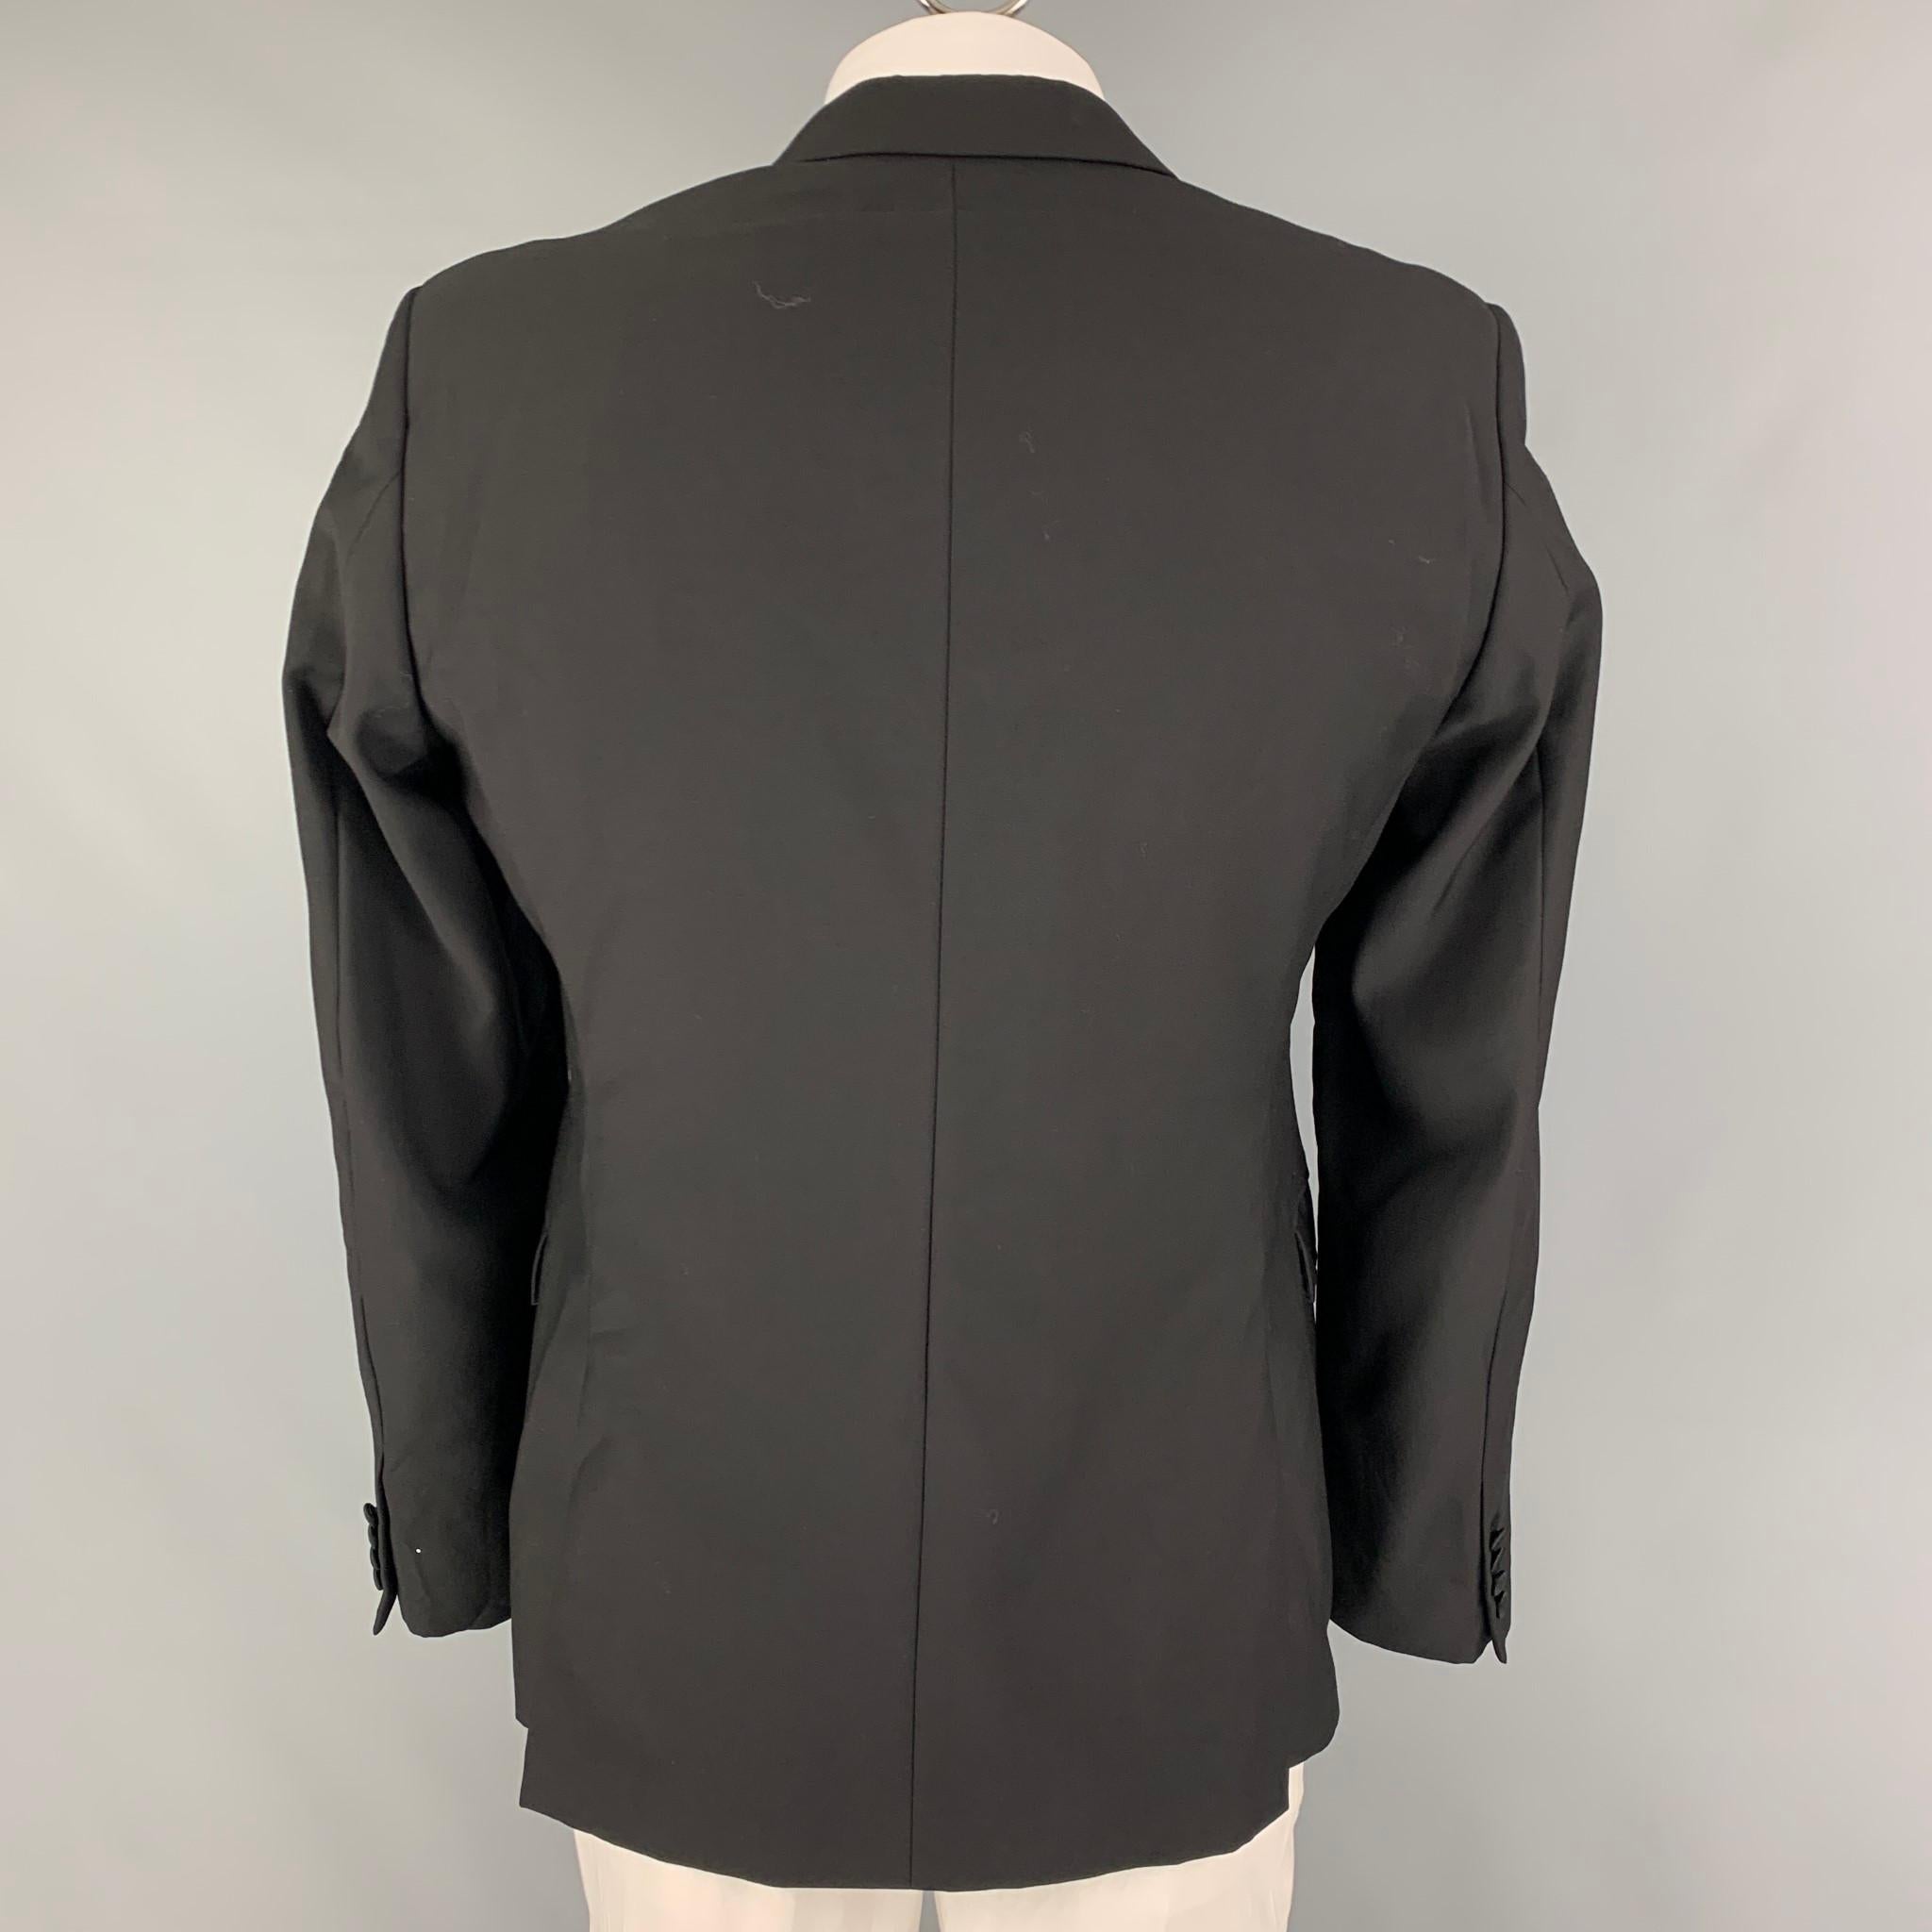 suit jacket back flap